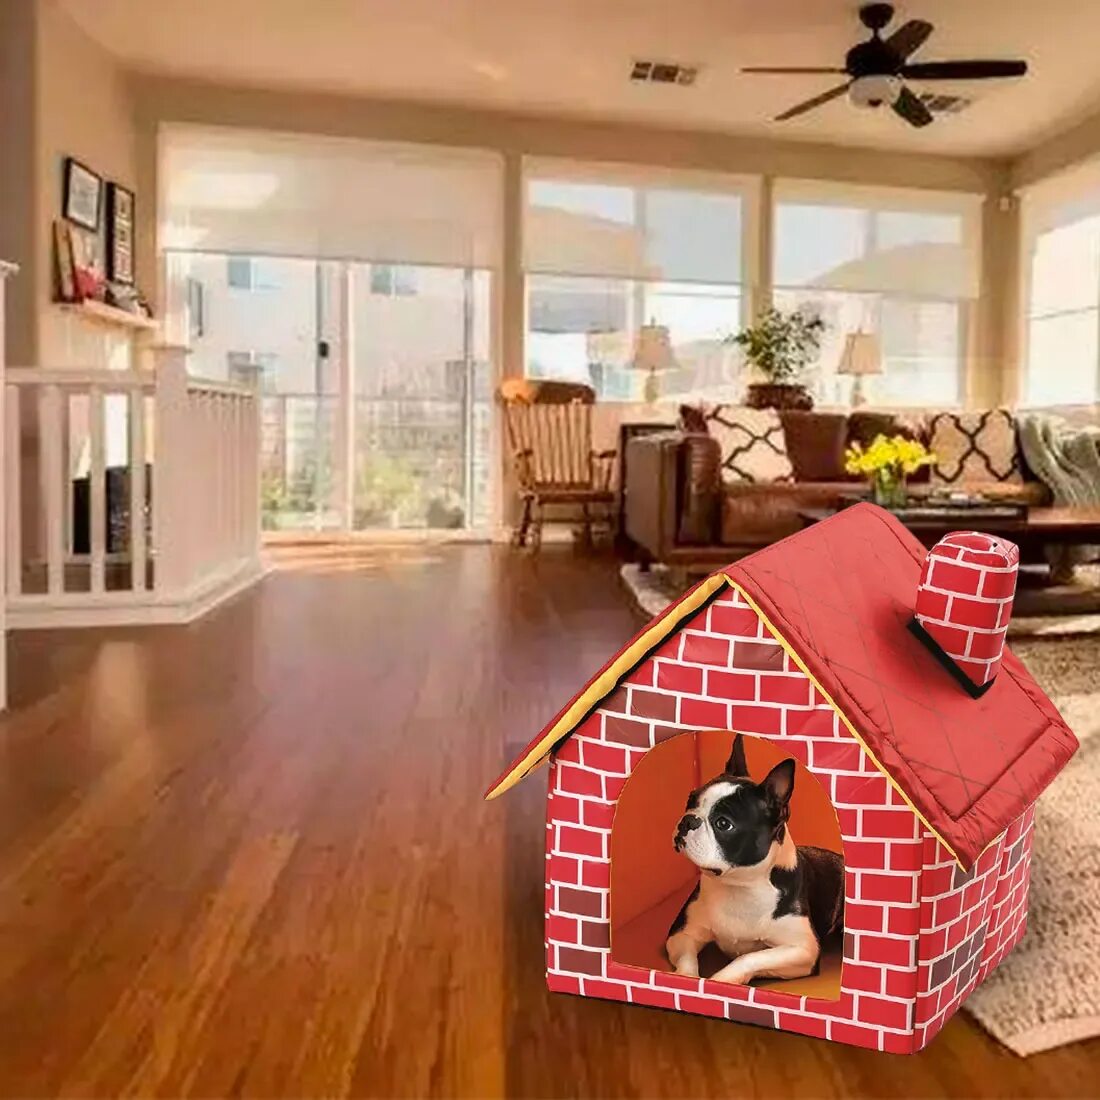 Pet дом. Домик для собачки. Домик для маленькой собаки. Домик для собачки в квартире. Двухэтажный дом для собаки.